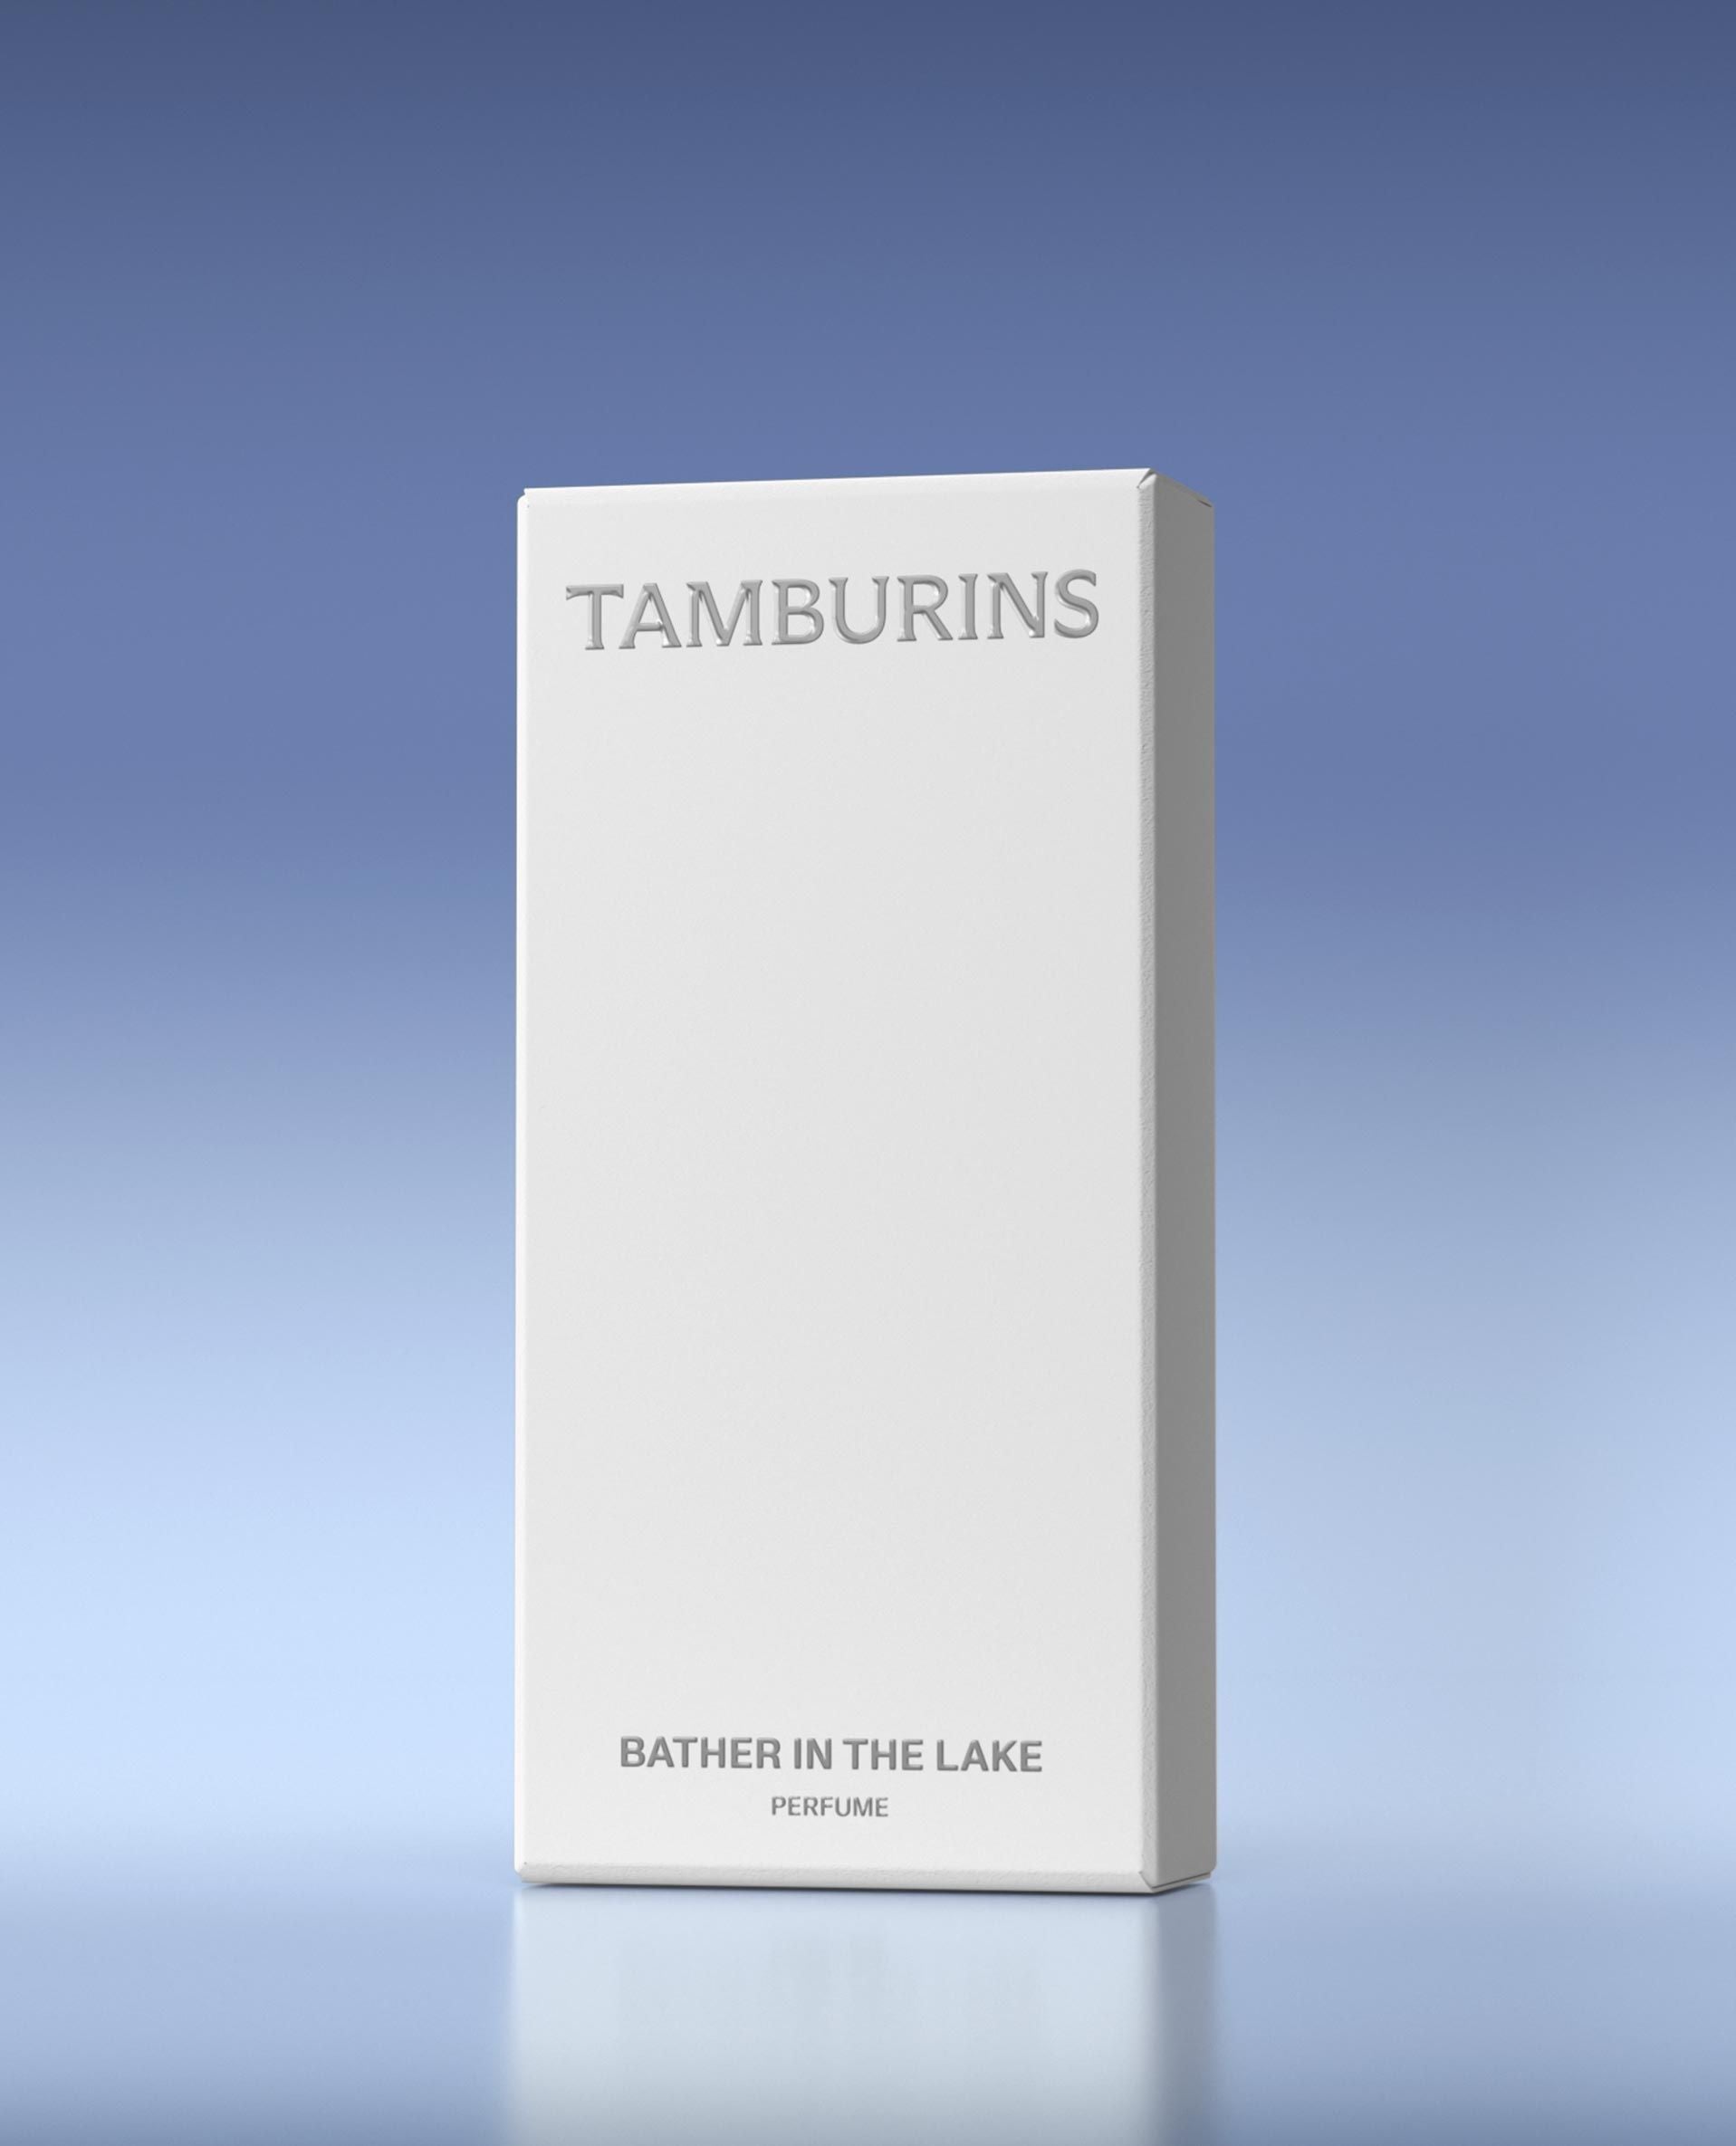 TAMBURINS 湖11ml / 50mlの香水浸漬